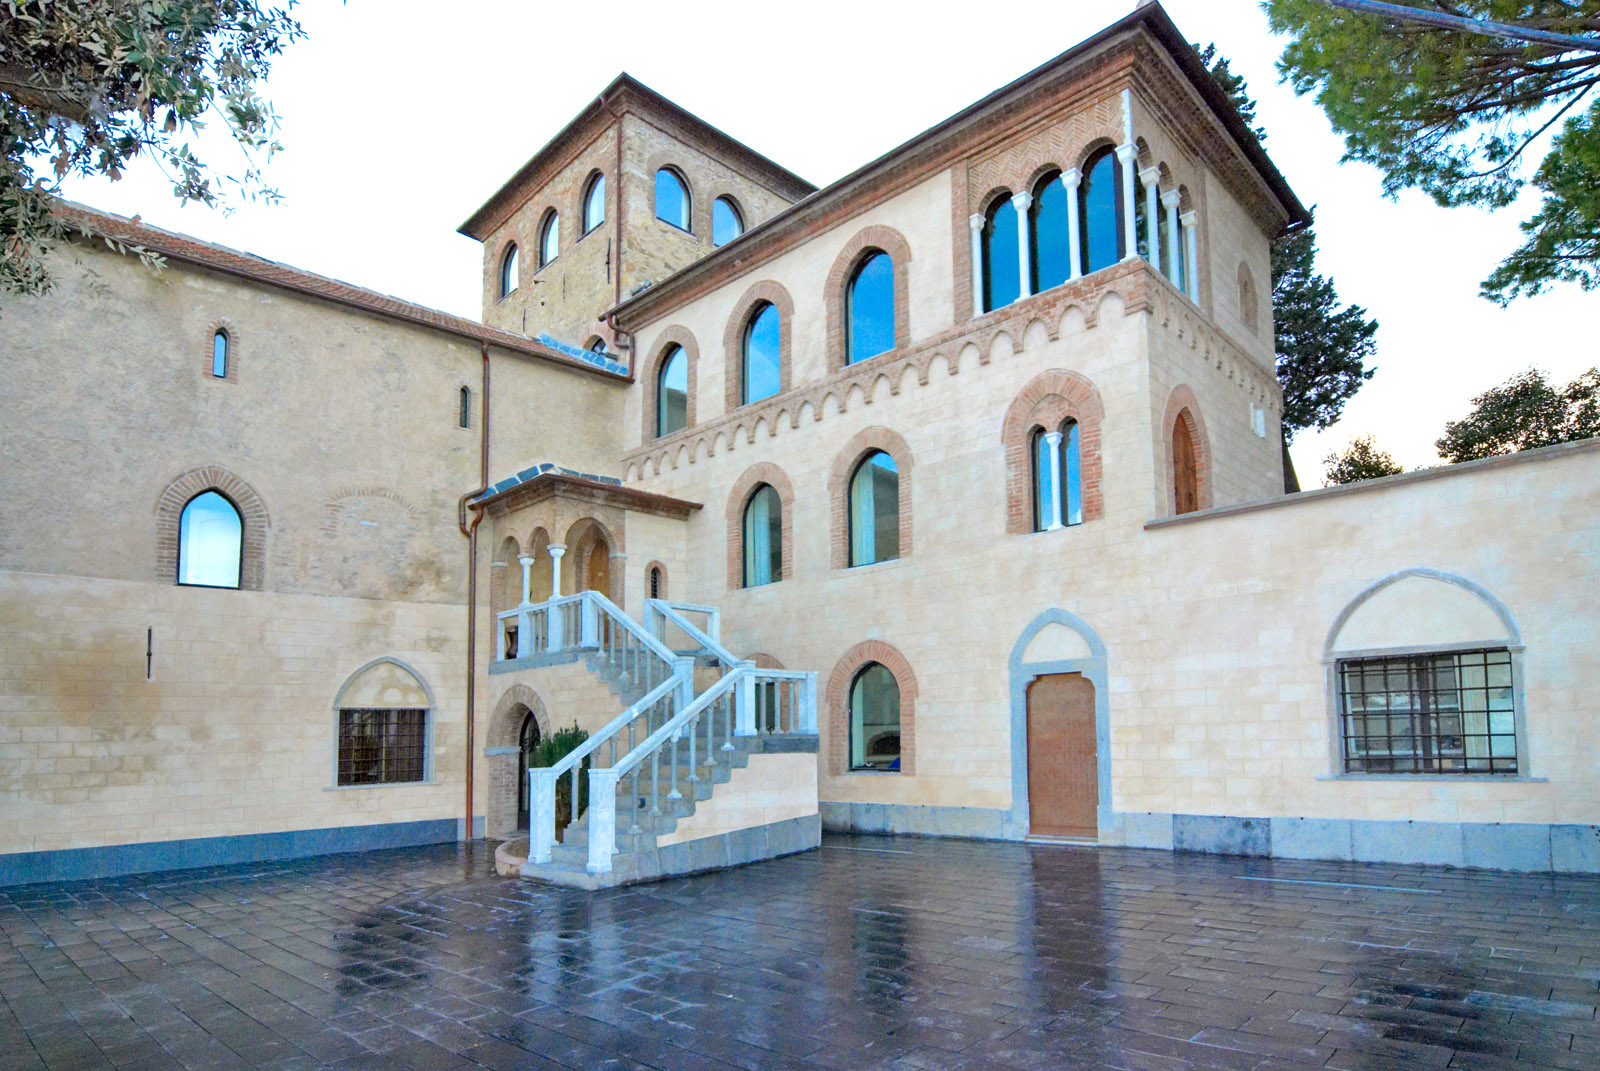 L'ex Abbazia di San Martino dopo l'opera di restauro di Formento Restauri, ditta edile di Finale Ligure, Savona.